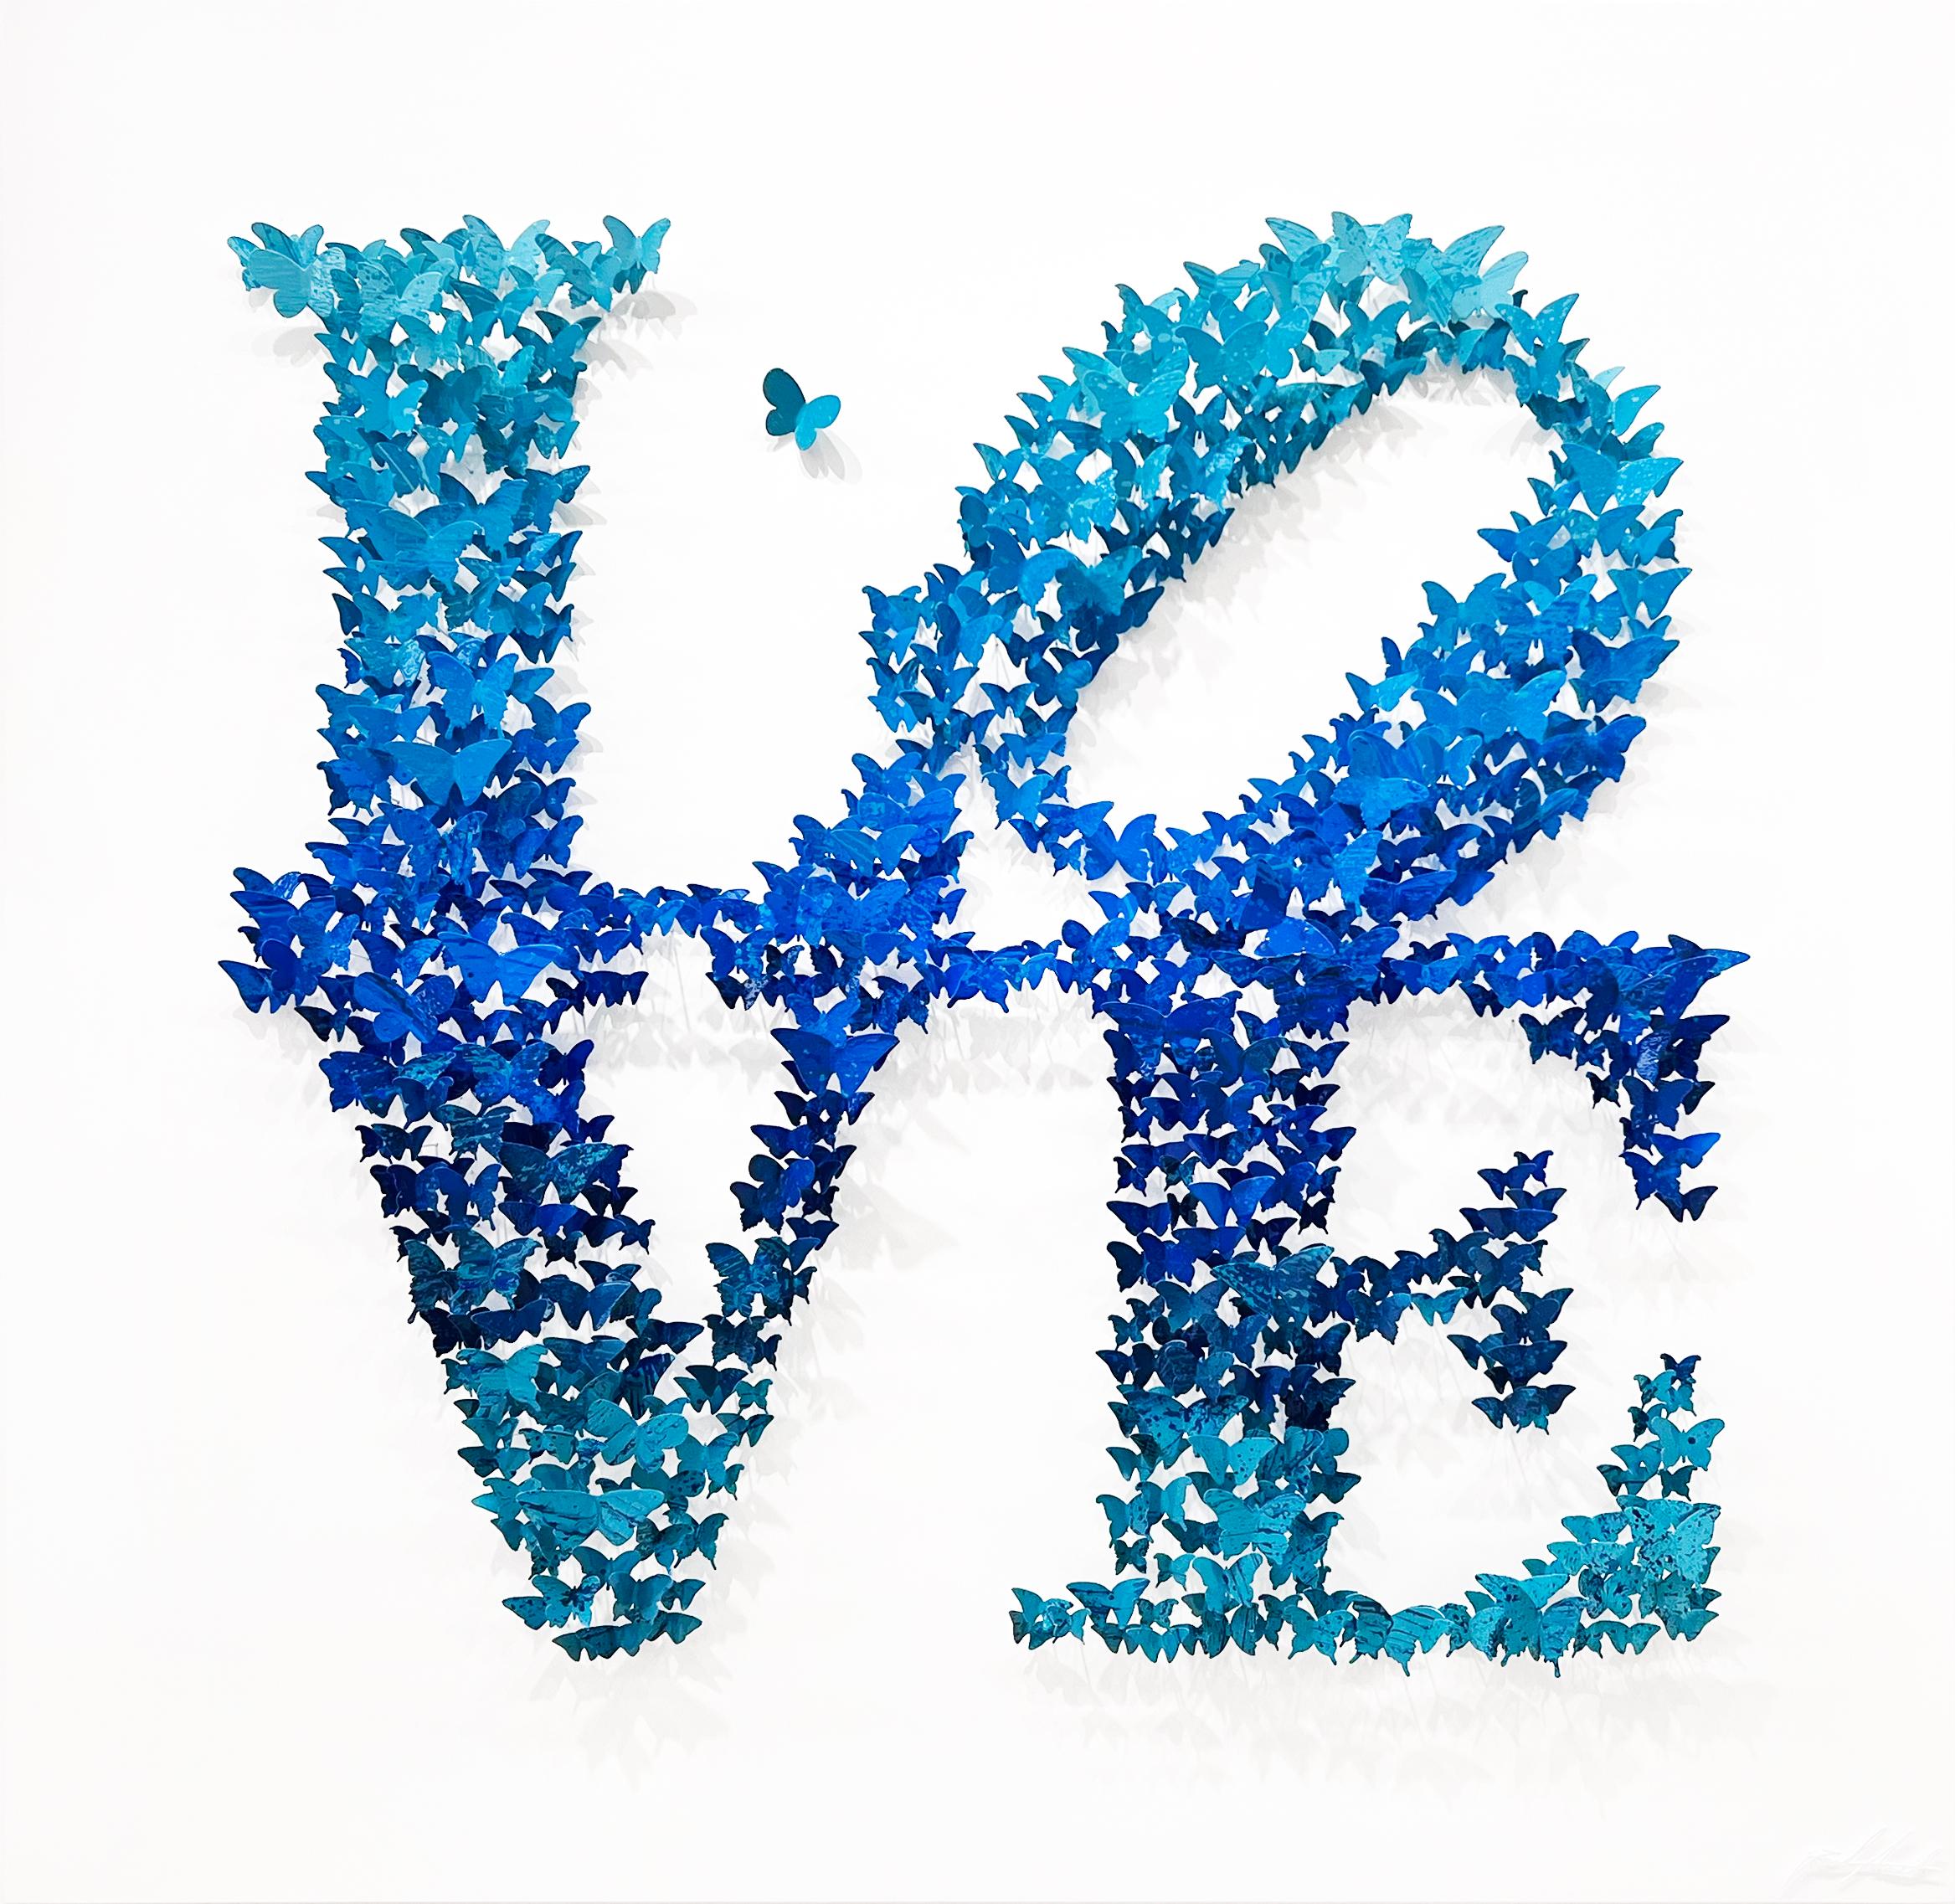 L O V E - blue, Mixed Media Metal Wall Sculpture - Mixed Media Art by Joel Amit